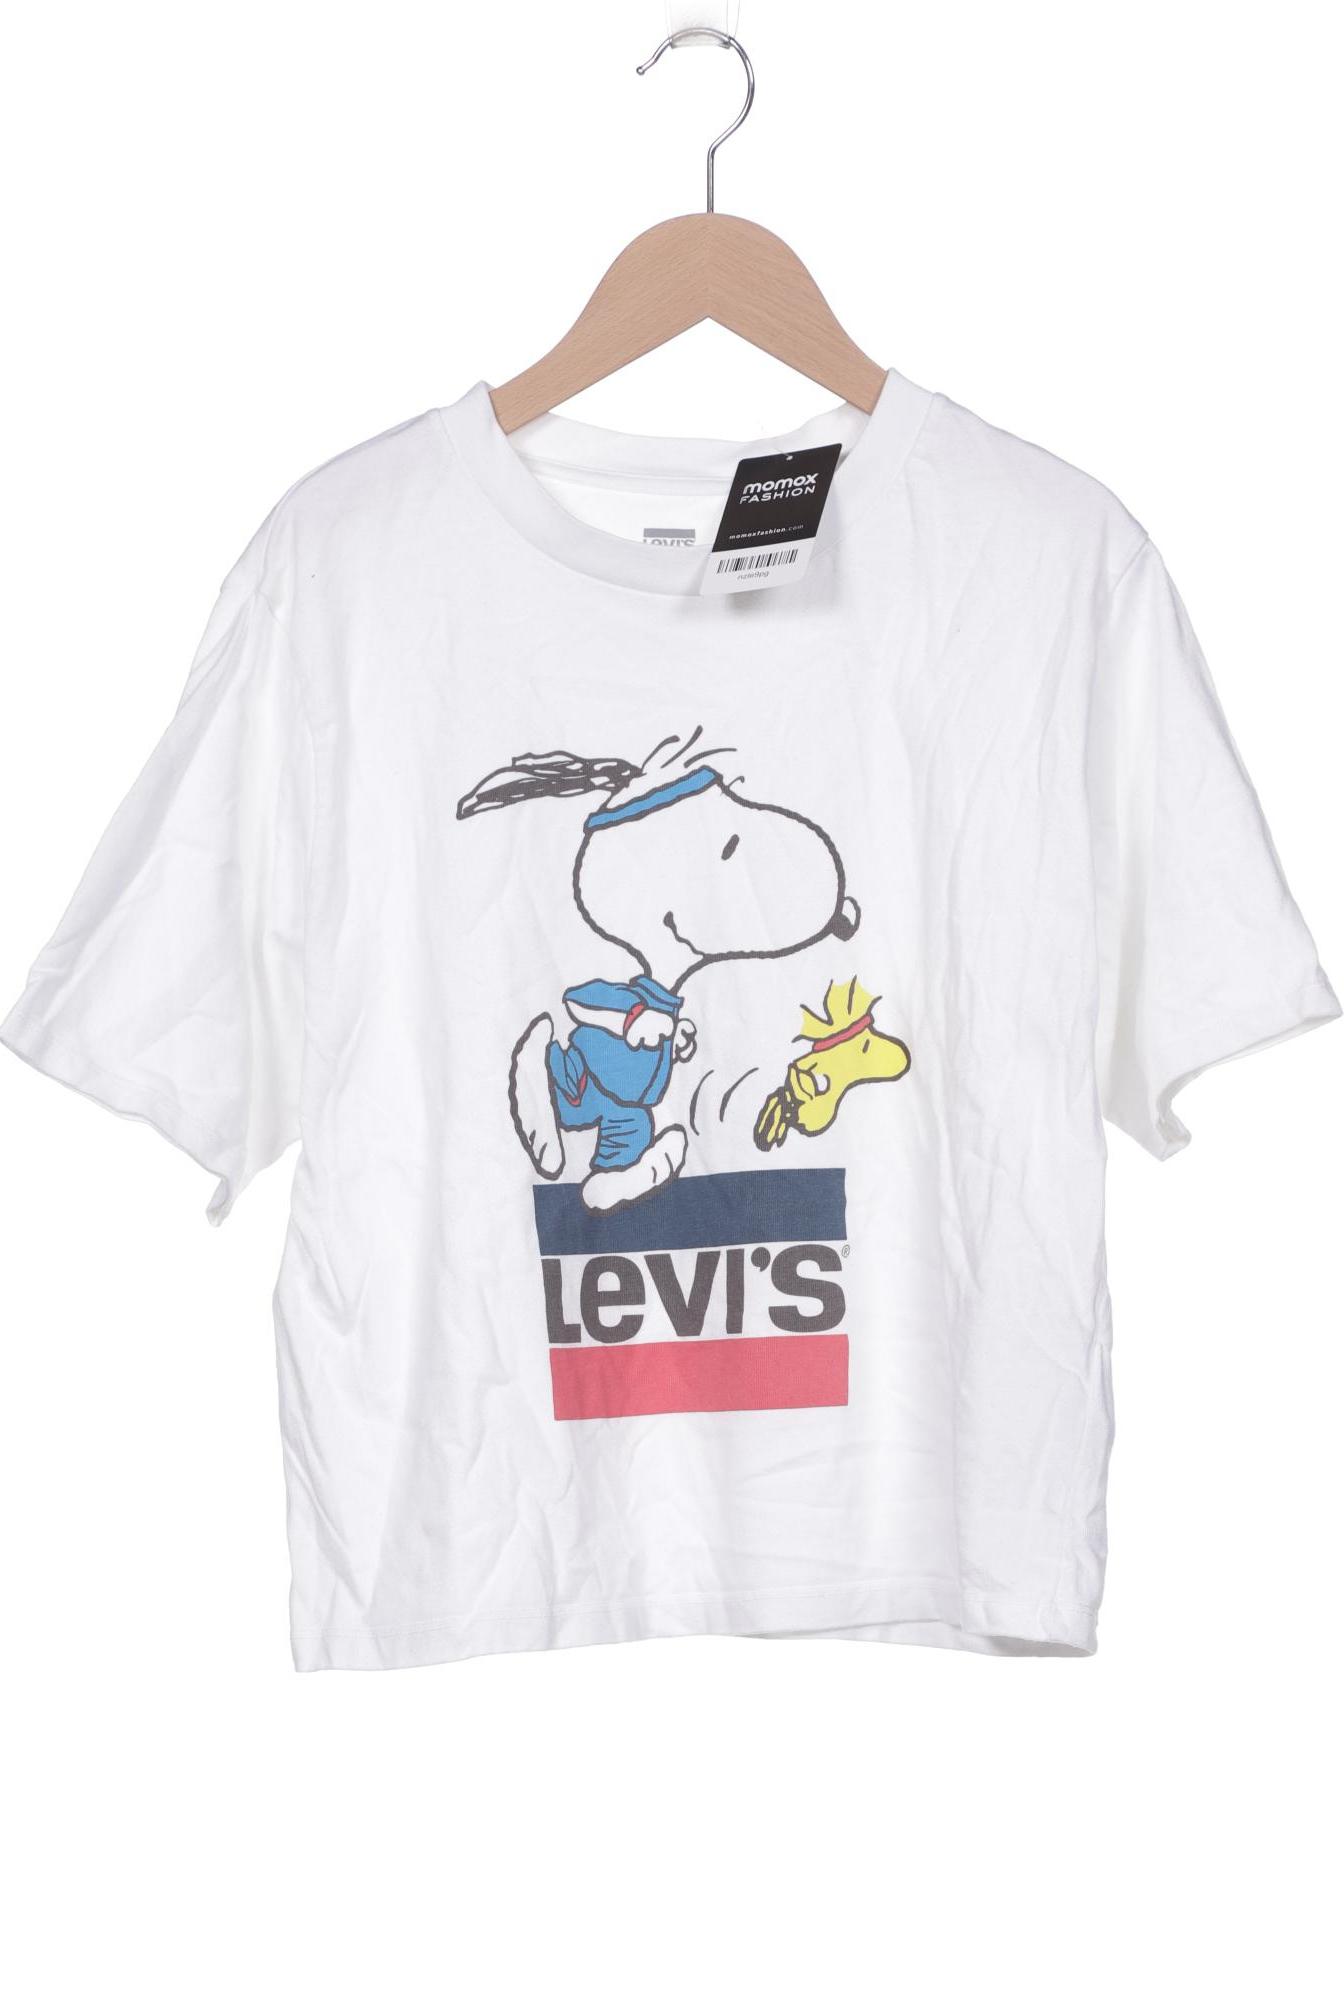 Levis Damen T-Shirt, weiß, Gr. 34 von Levis